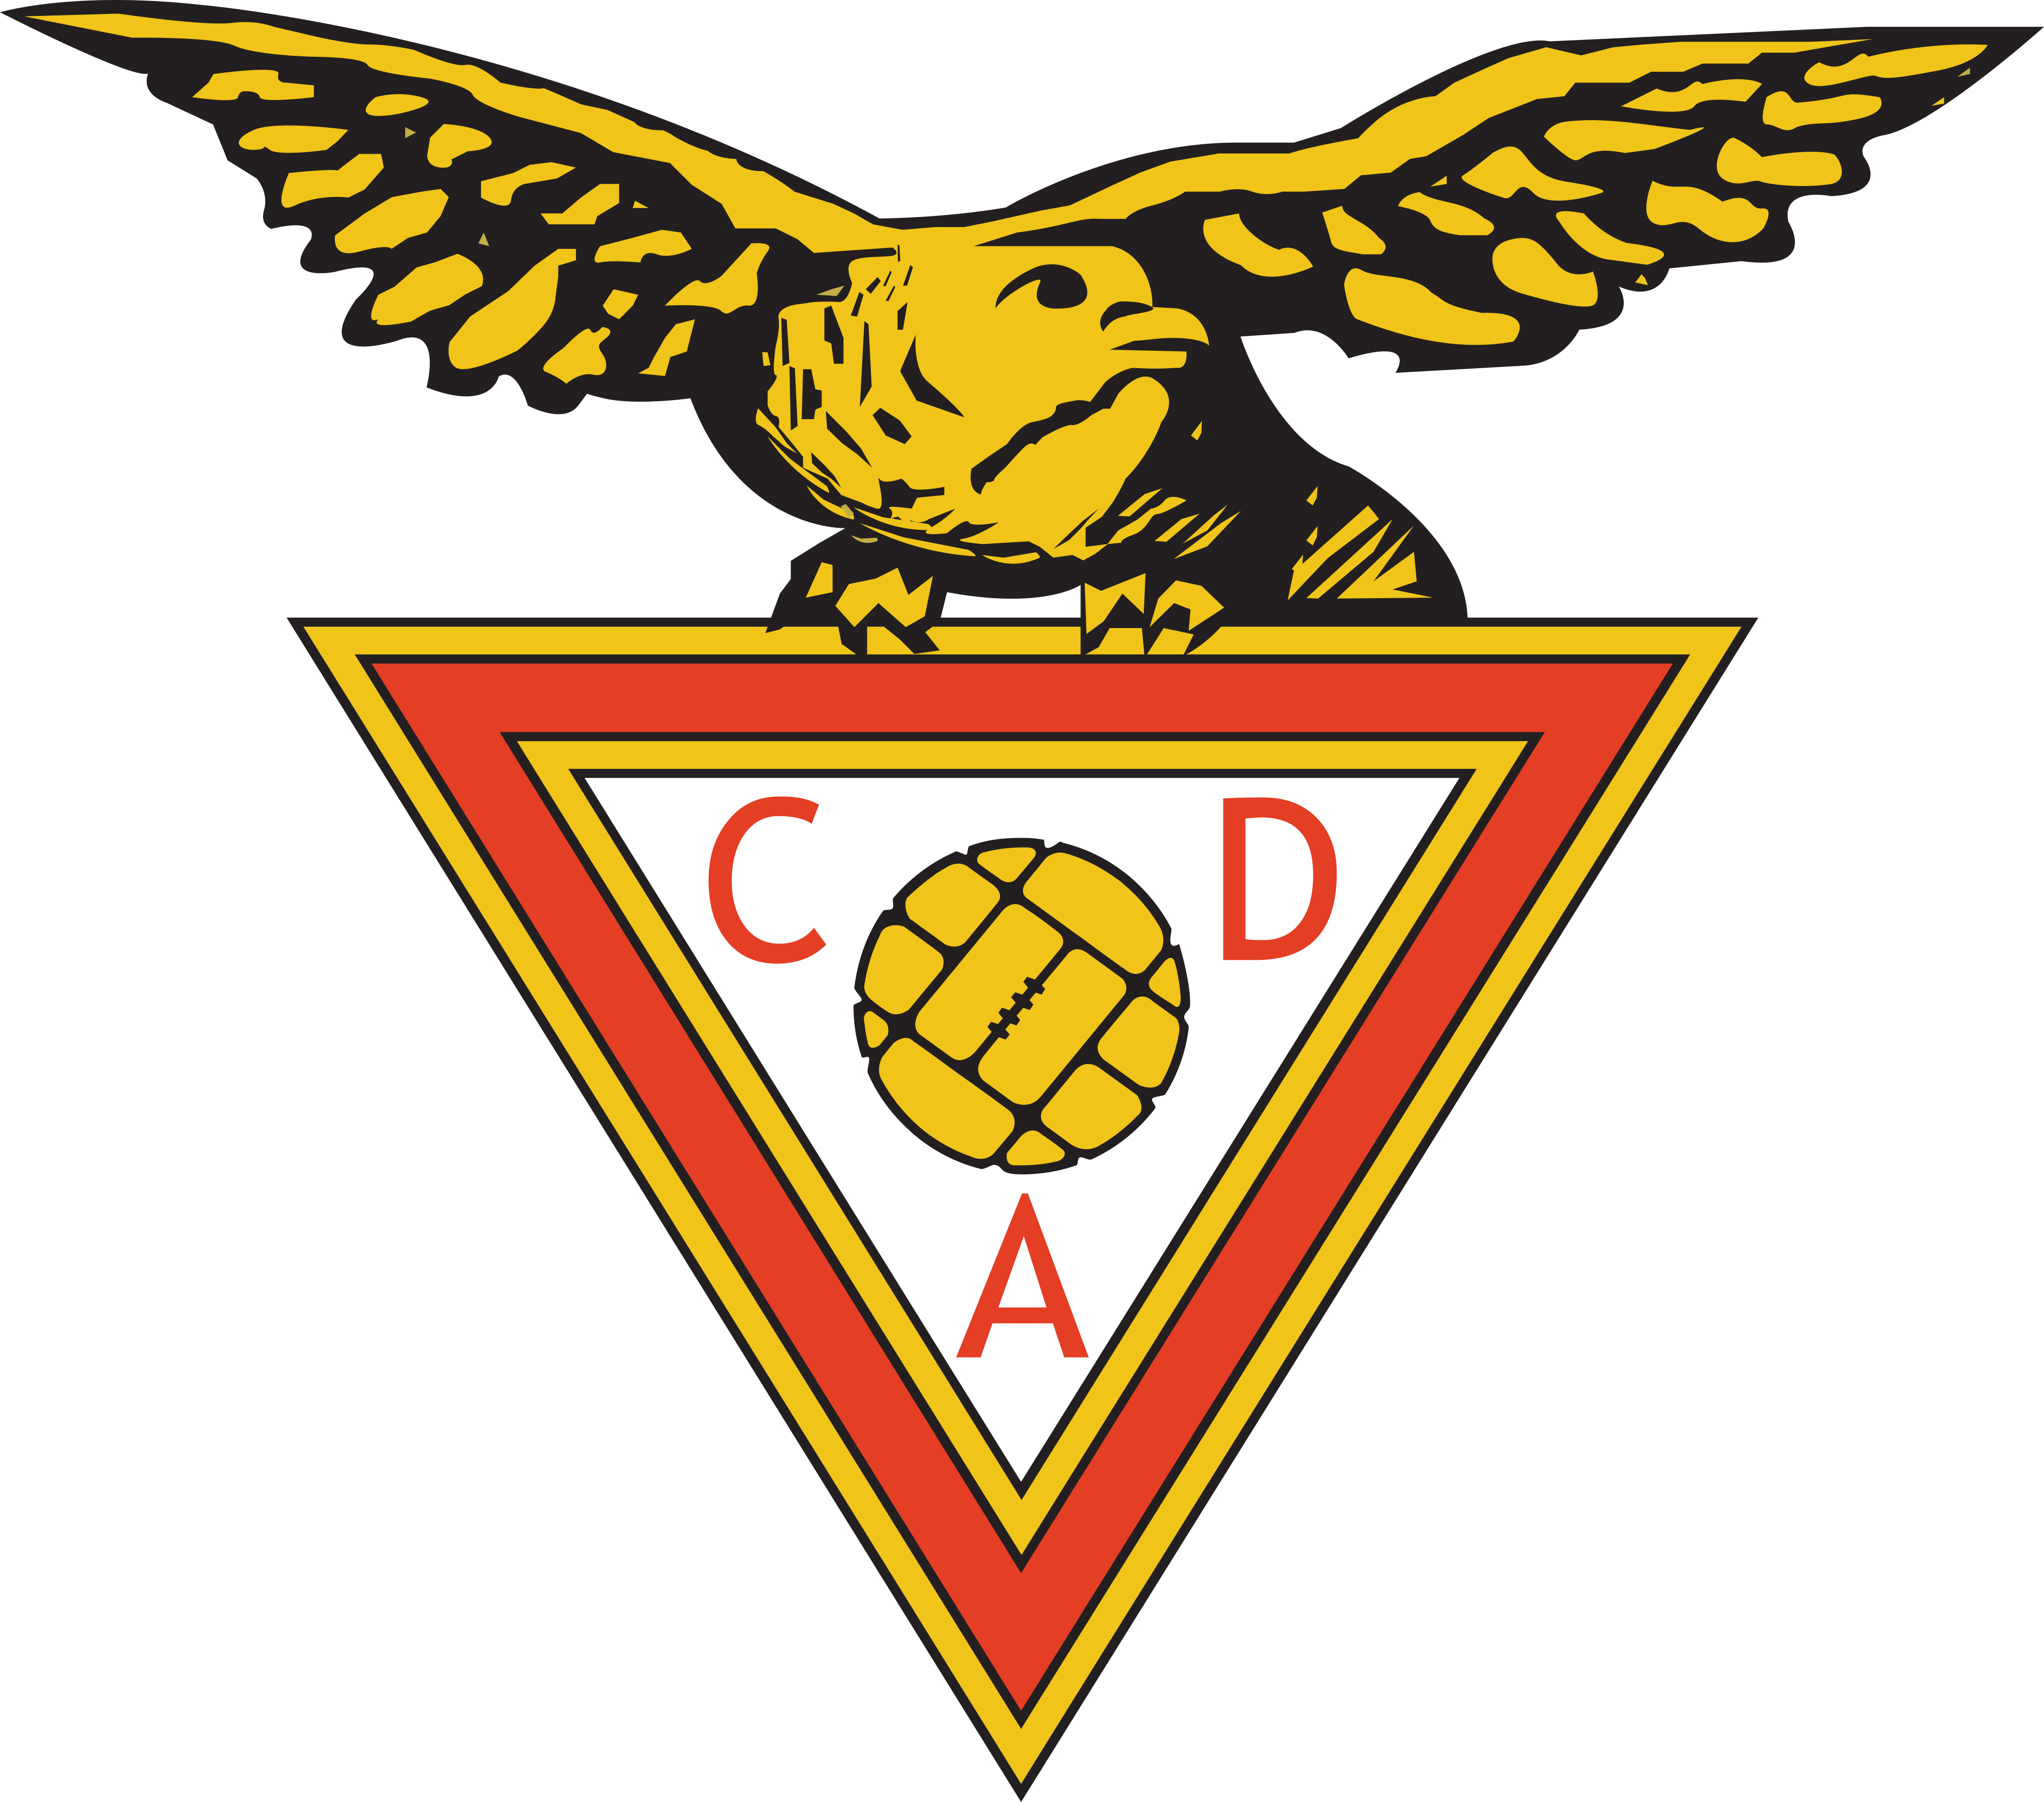 CD Aves Logo.